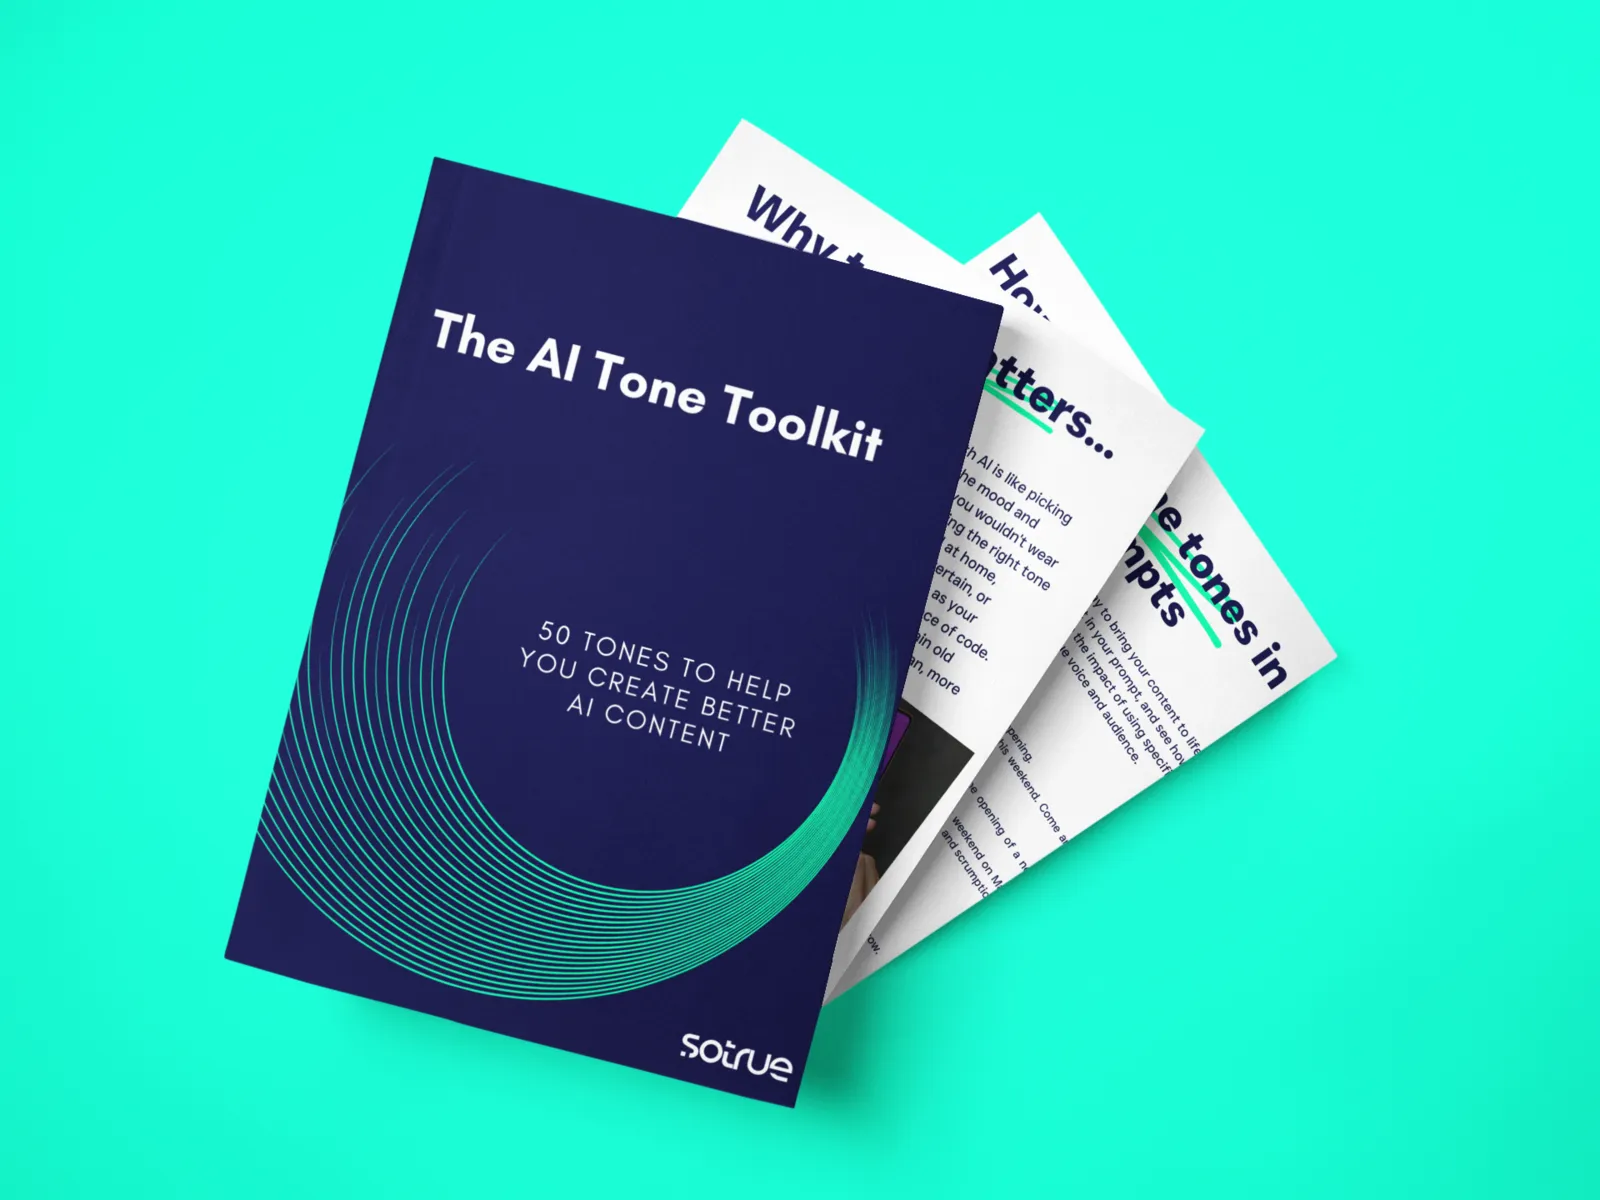 The AI Tone Toolbox